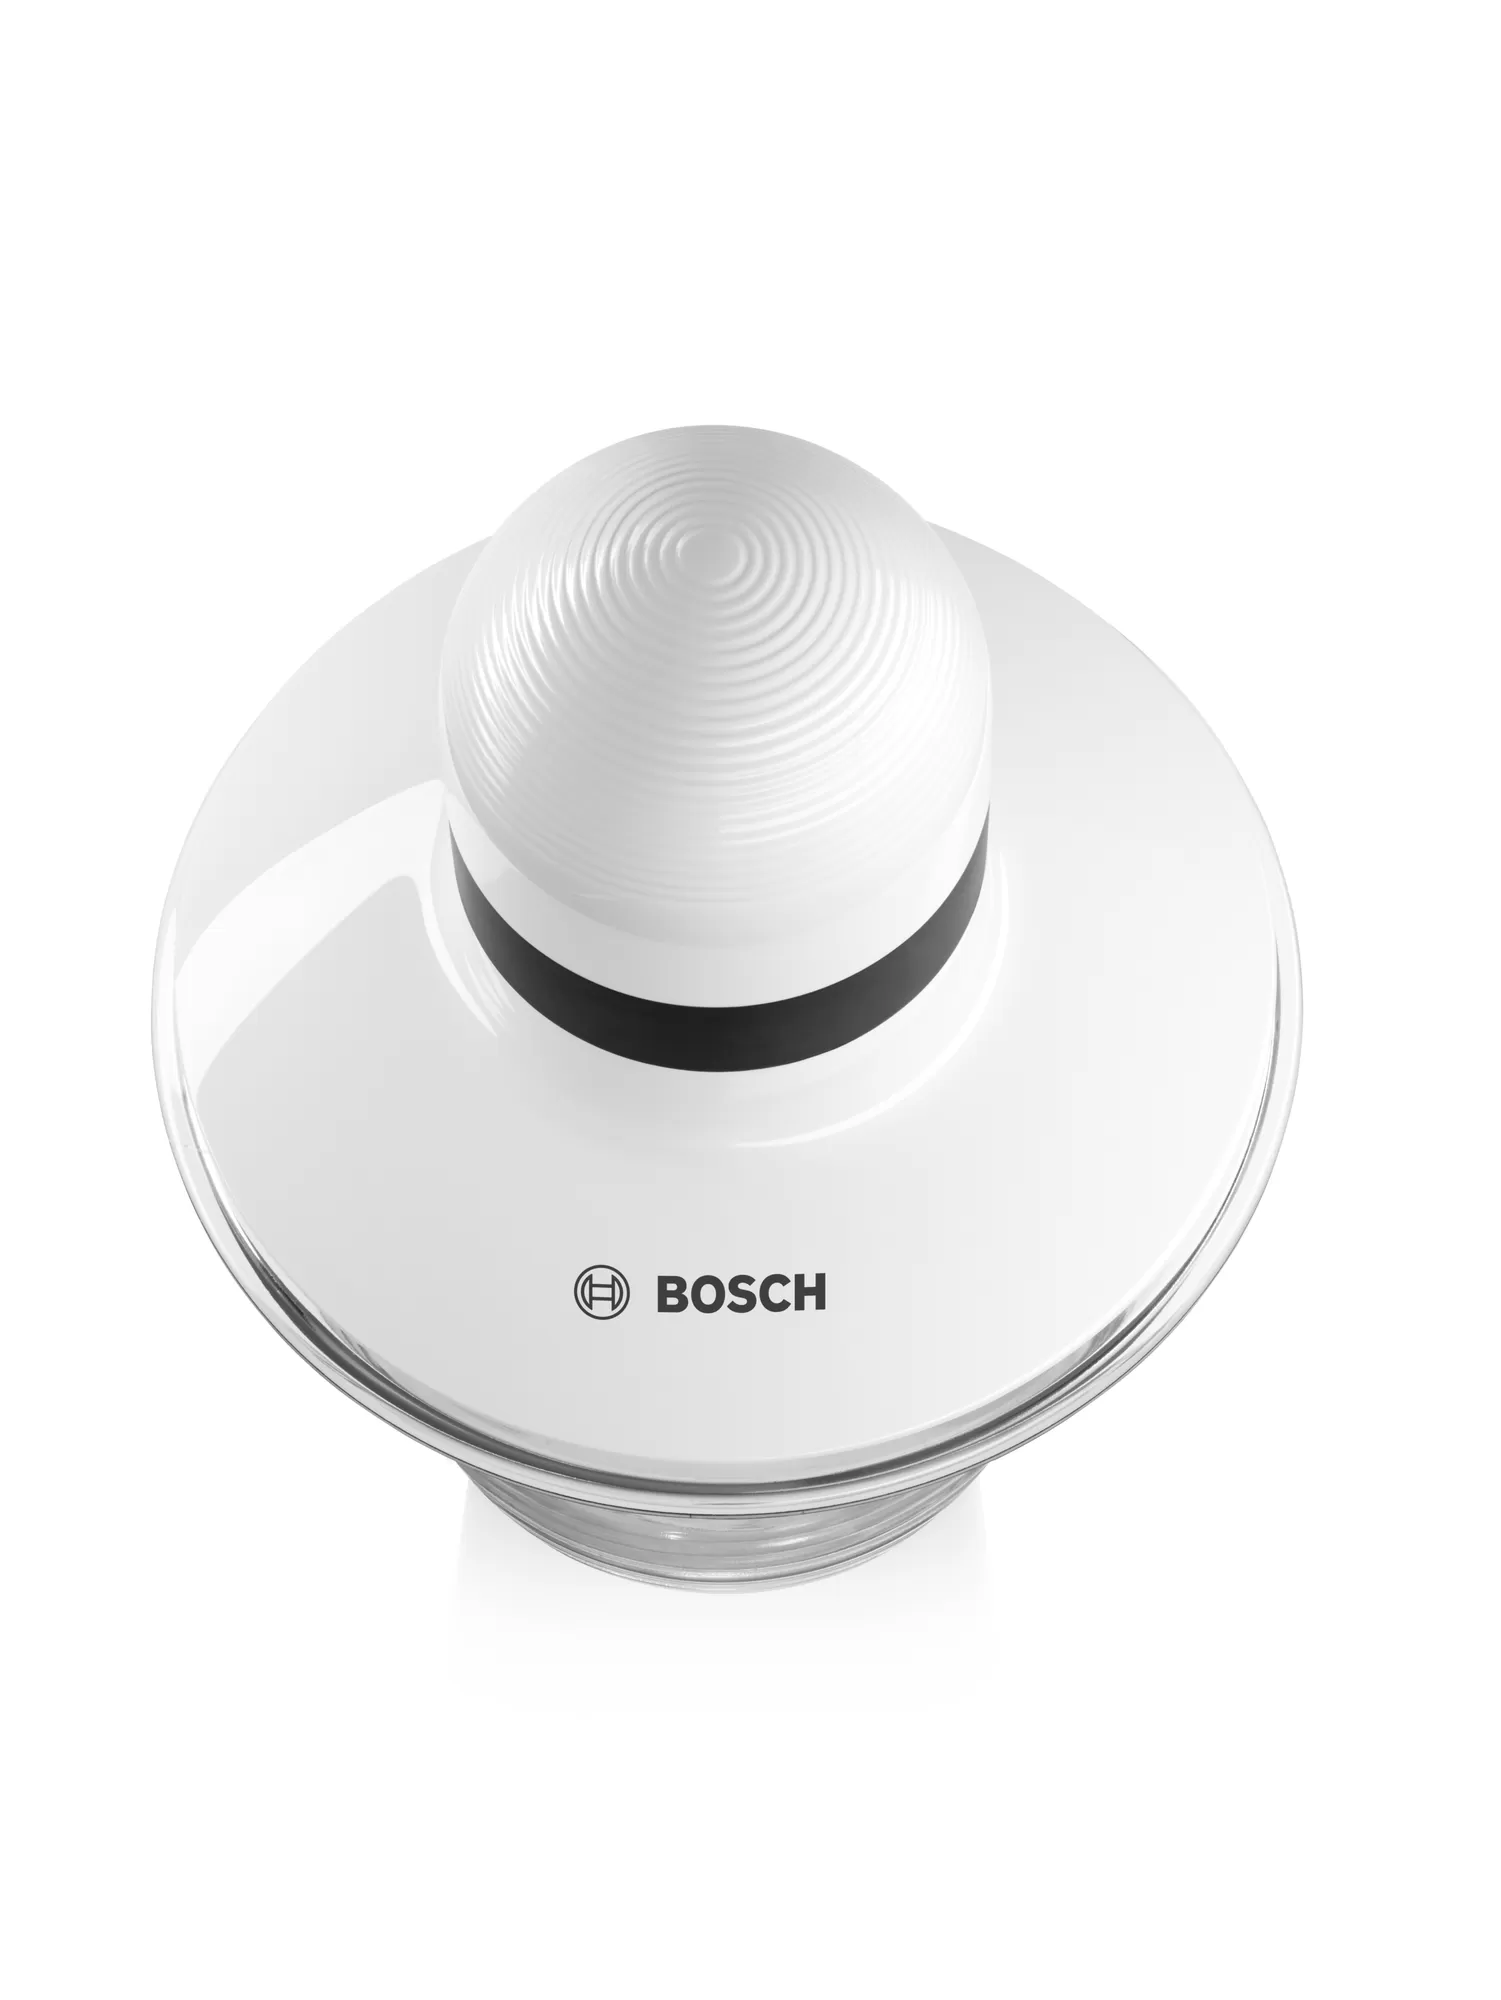 Bosch Chopper, 400 Watt, 800 ML, White, MMR08A1